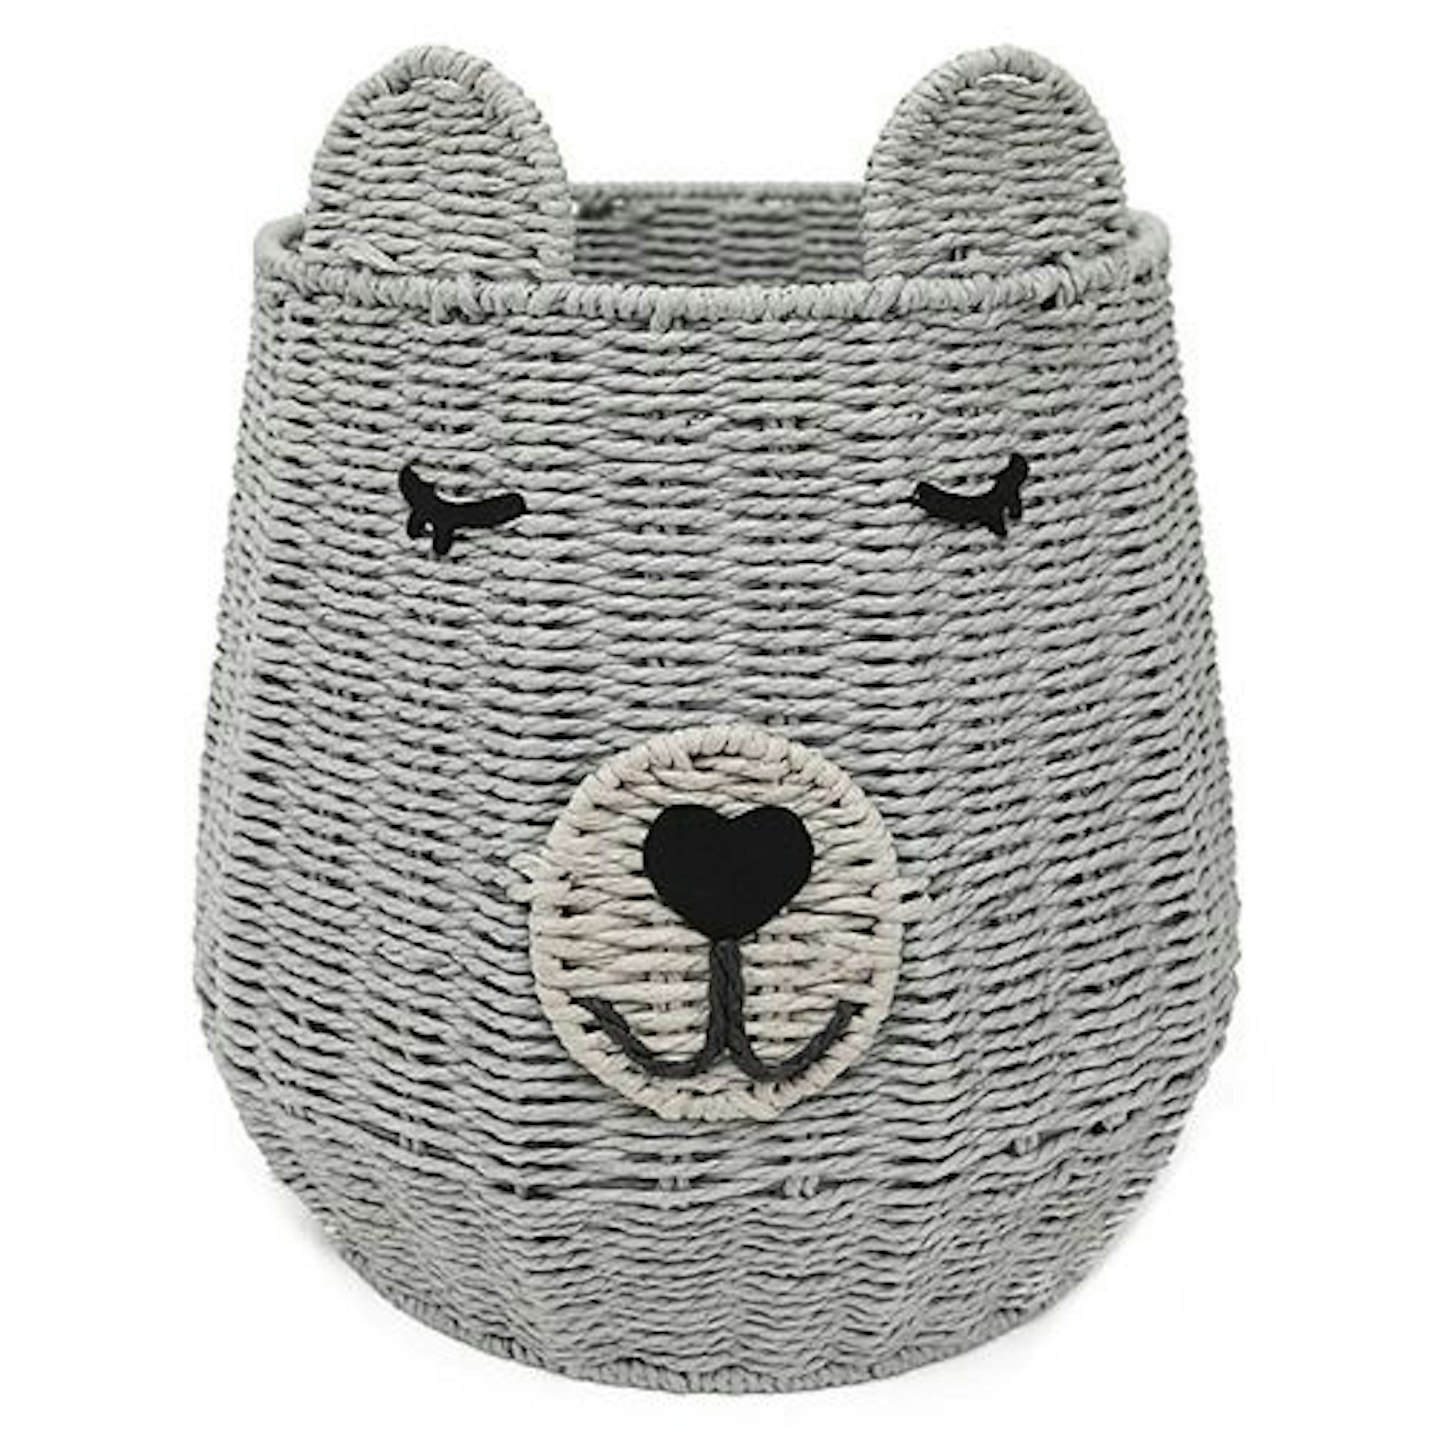 Grey bear basket